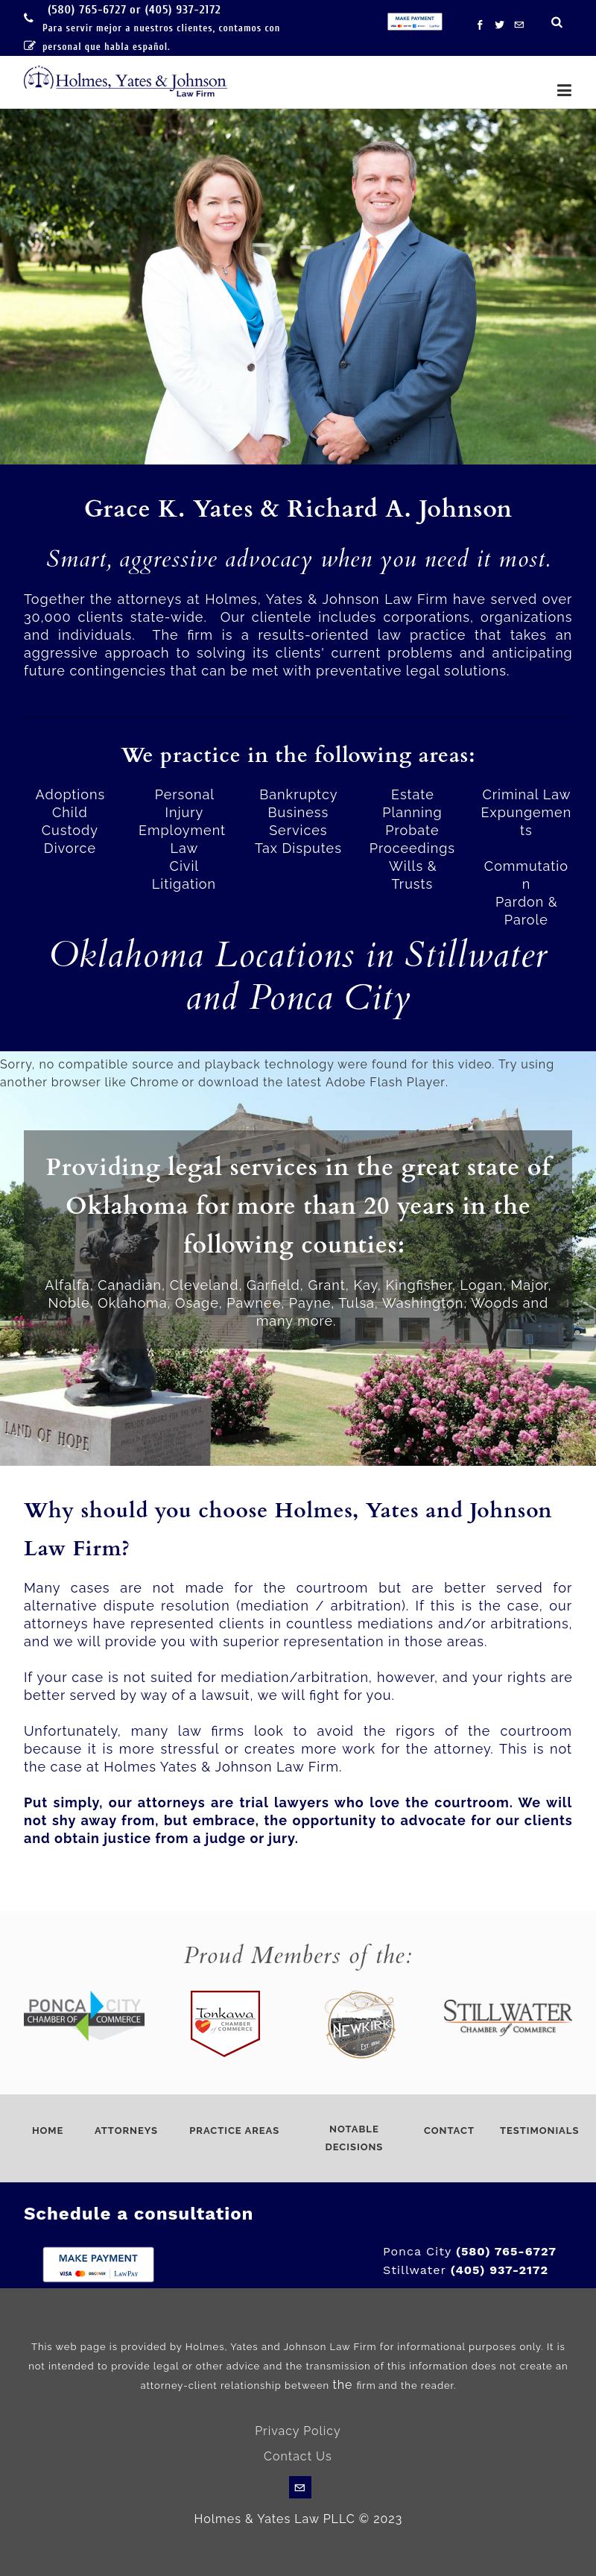 Holmes & Yates - Ponca City OK Lawyers